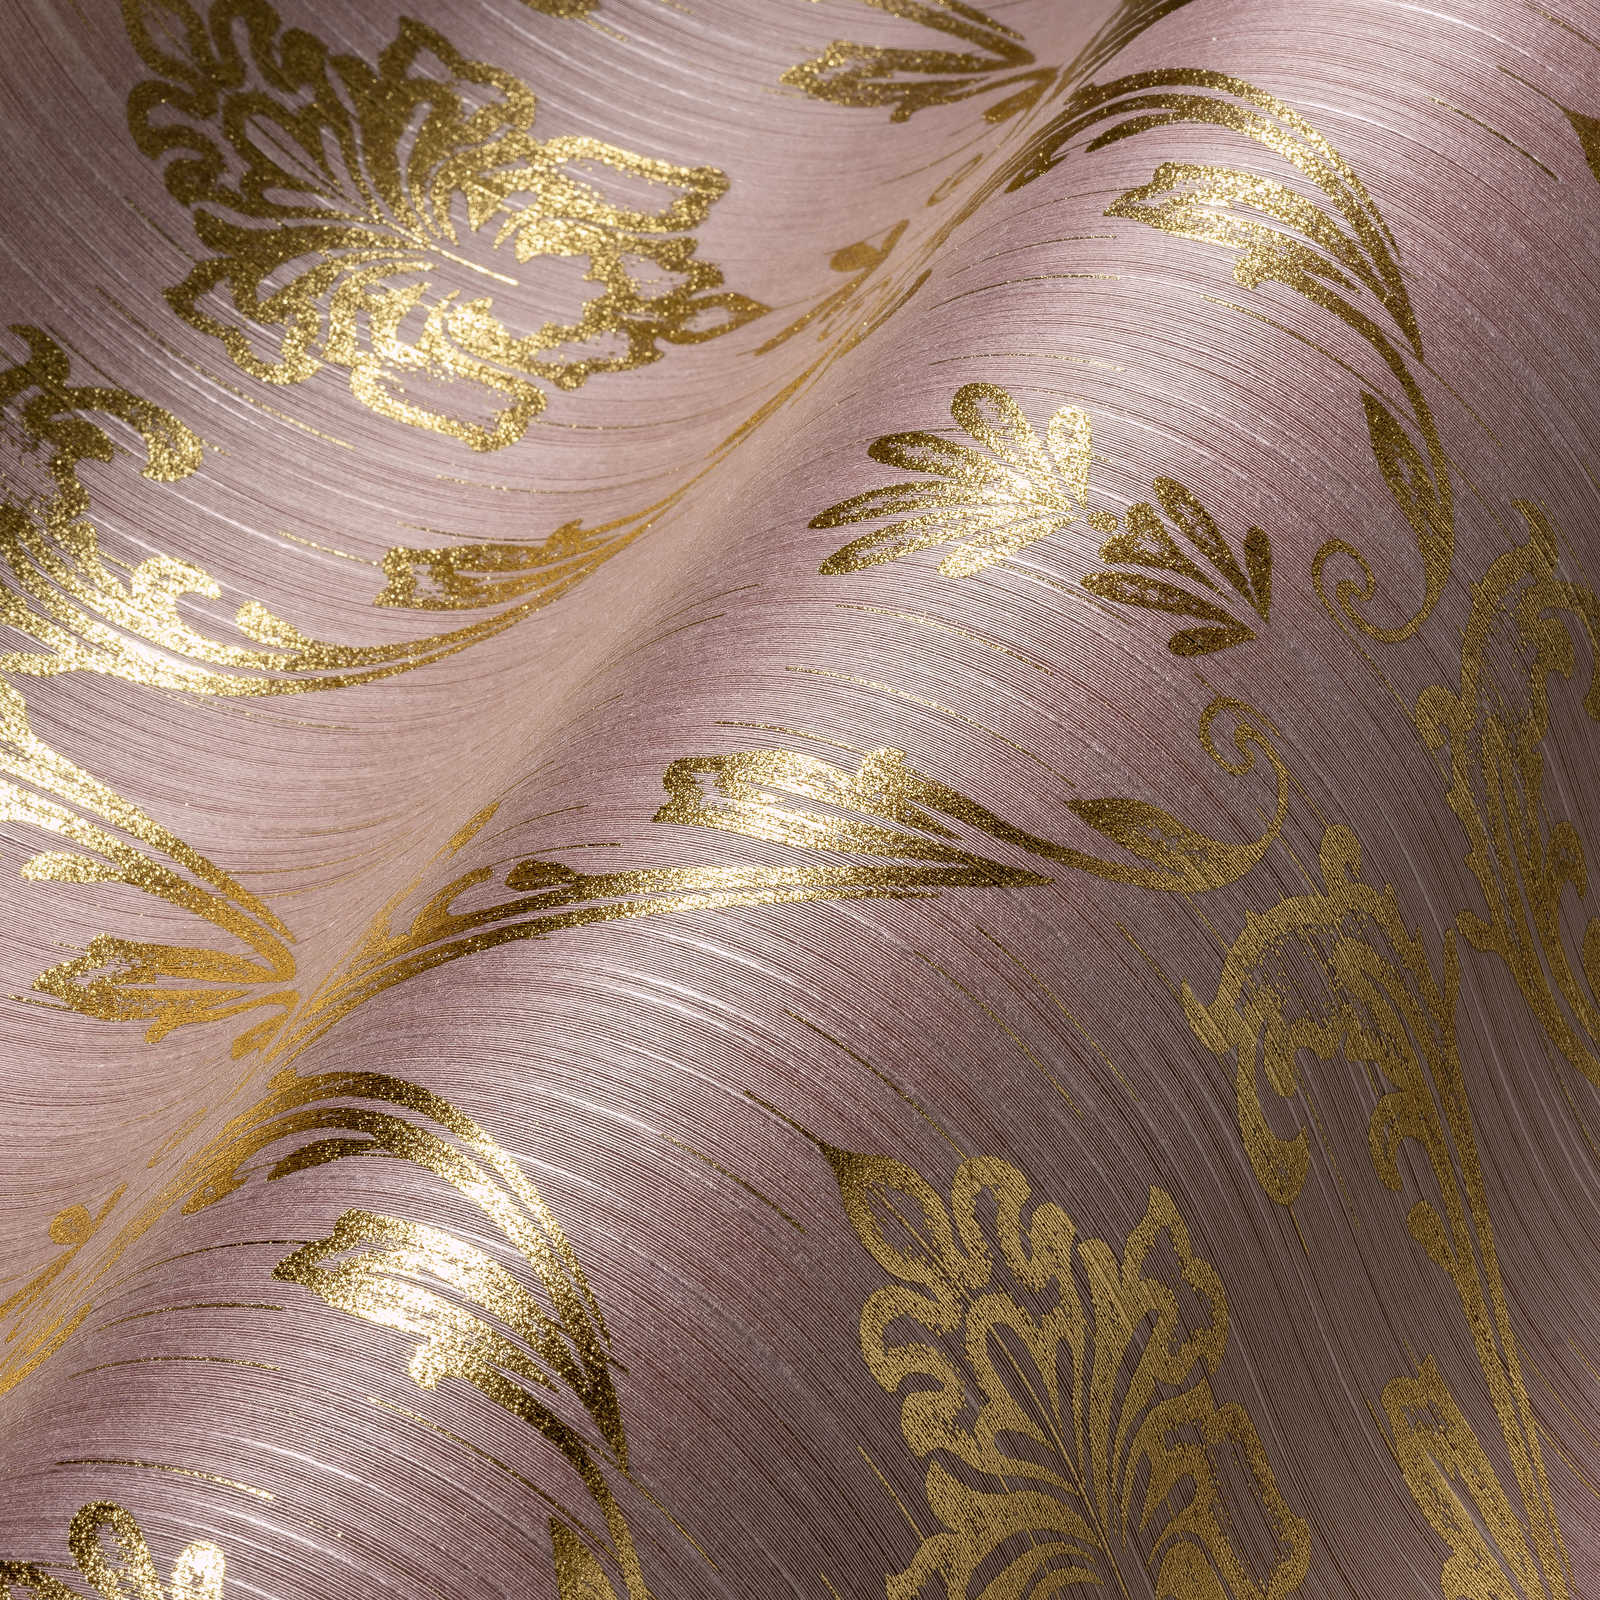             Papel pintado ornamental con elementos florales en oro - oro, rosa
        